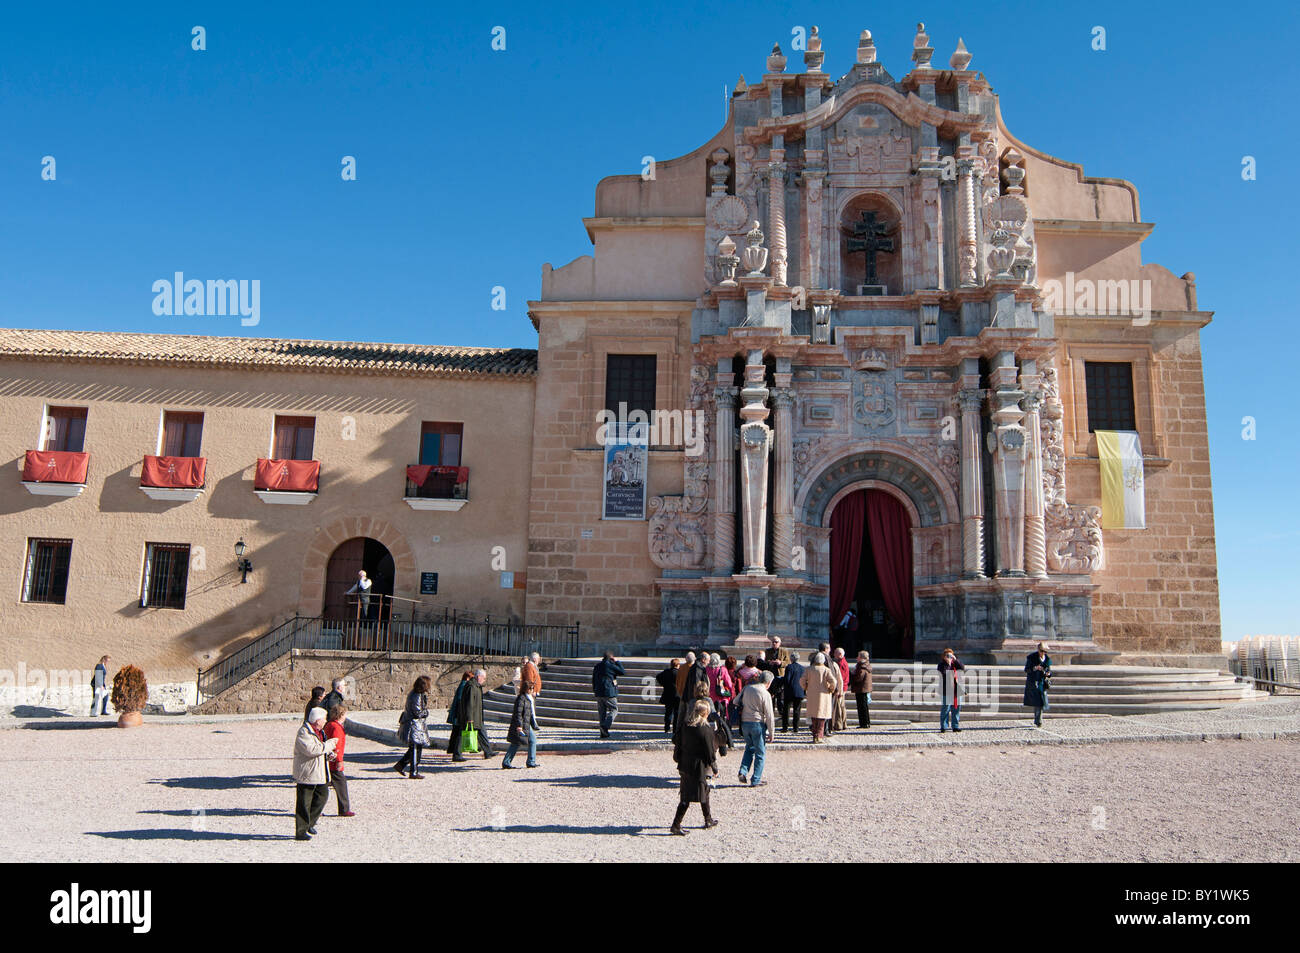 Château médiéval de Santa Cruz, Caravaca de la Cruz, dans la province de Murcie, dans le sud-est de l'Espagne. Banque D'Images